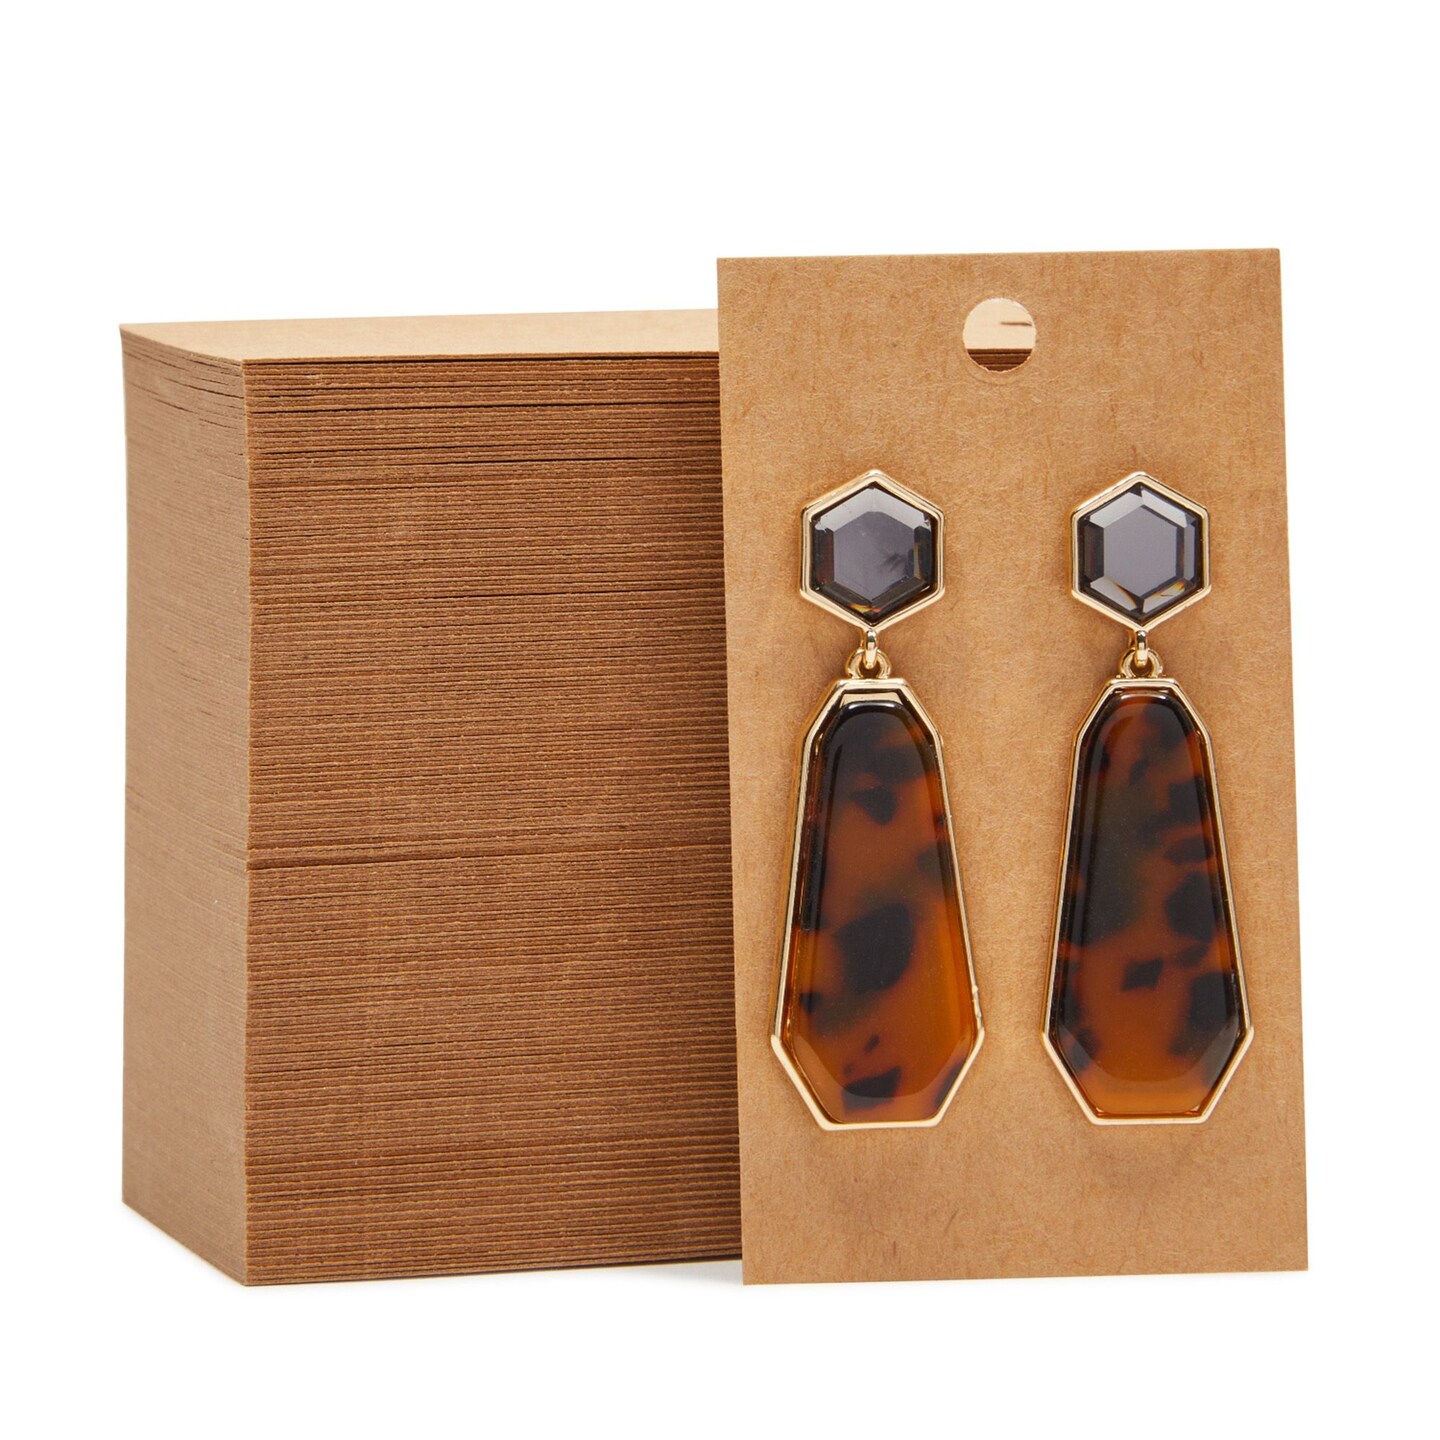 Earring Holder Cards Earring Packaging Earring Backs For Earrings Jewelry  Packag